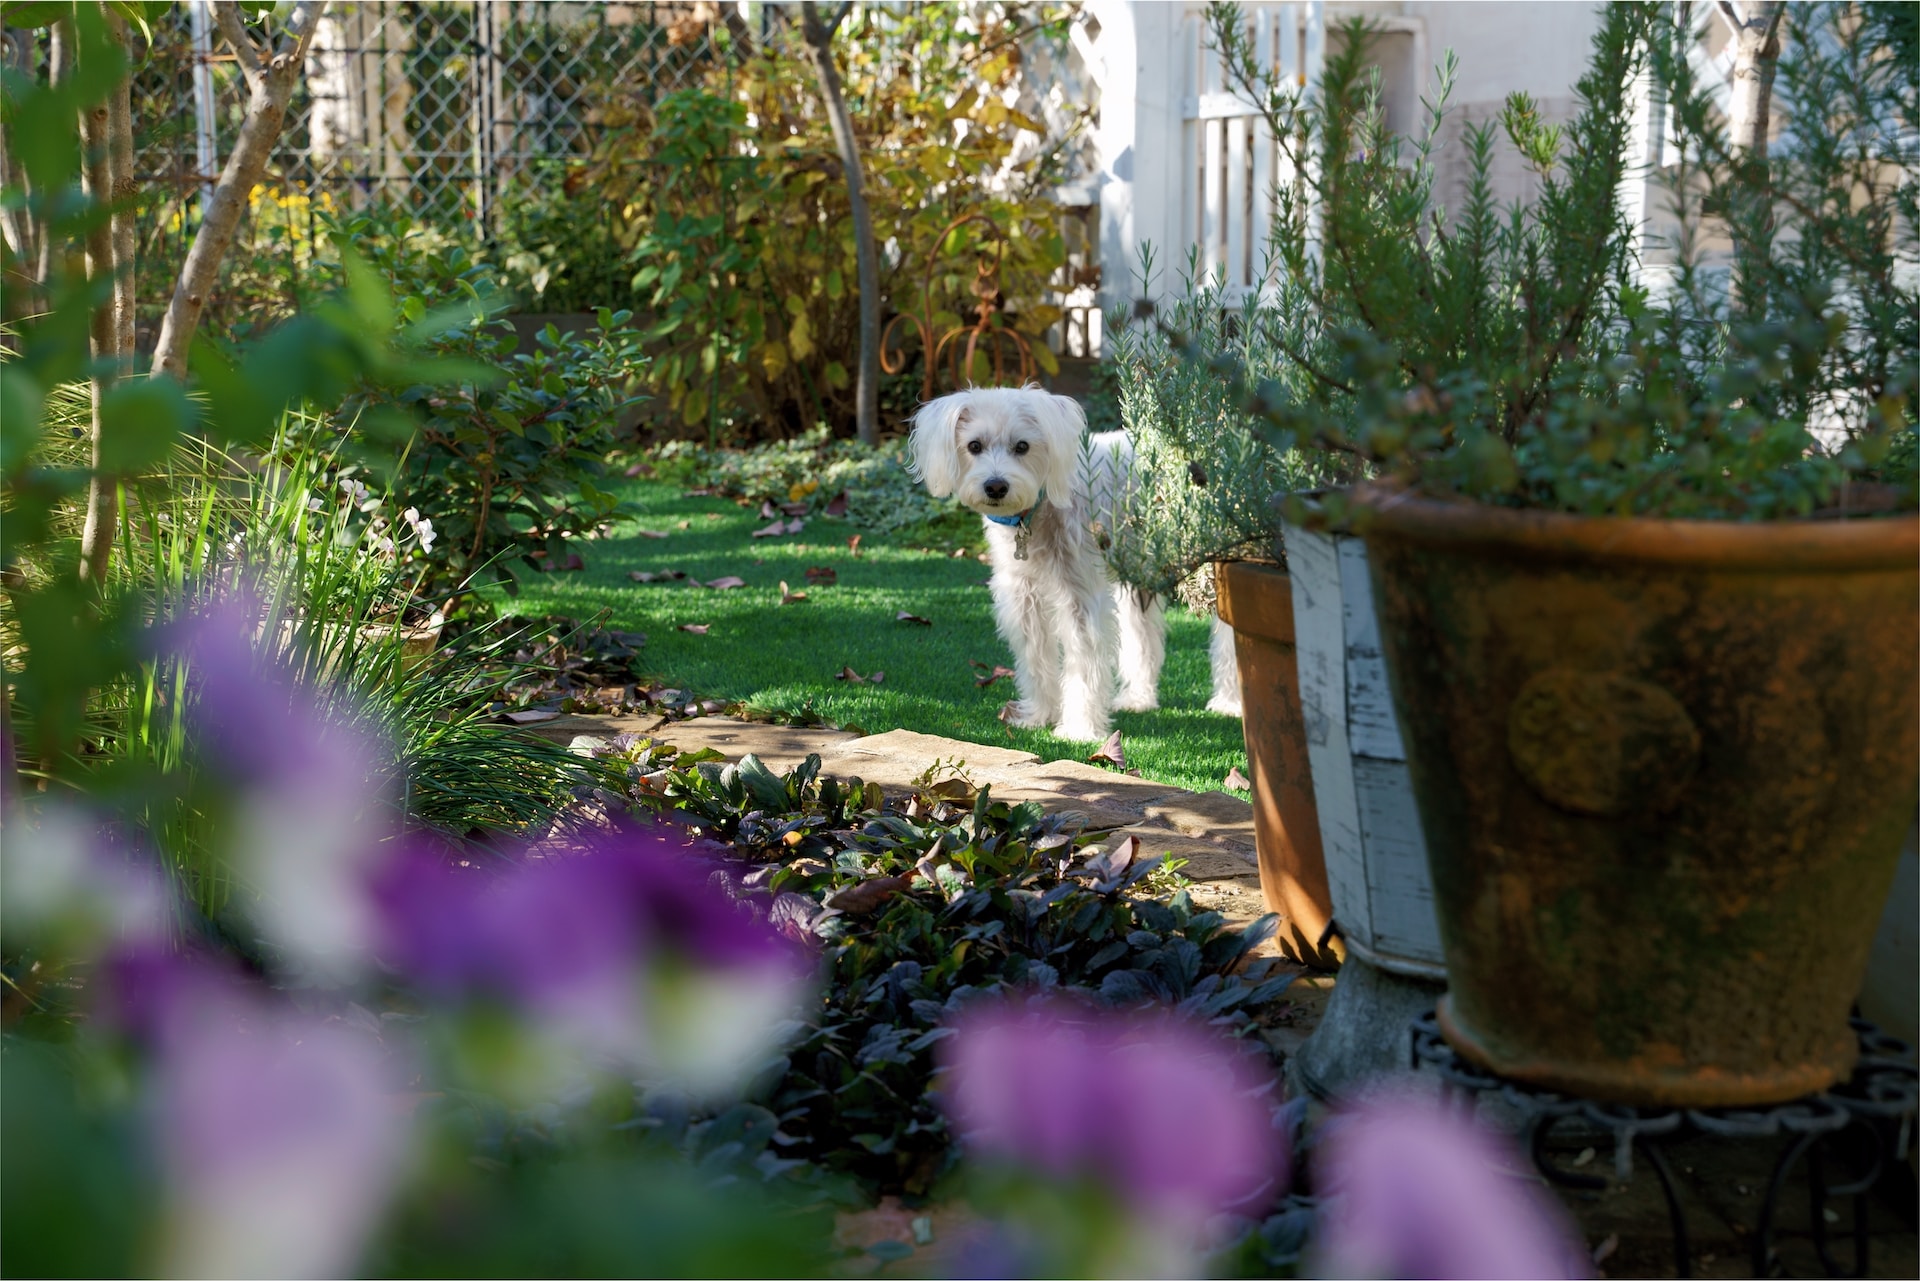 Un perro blanco pequeño explorando un jardín lleno de flores.